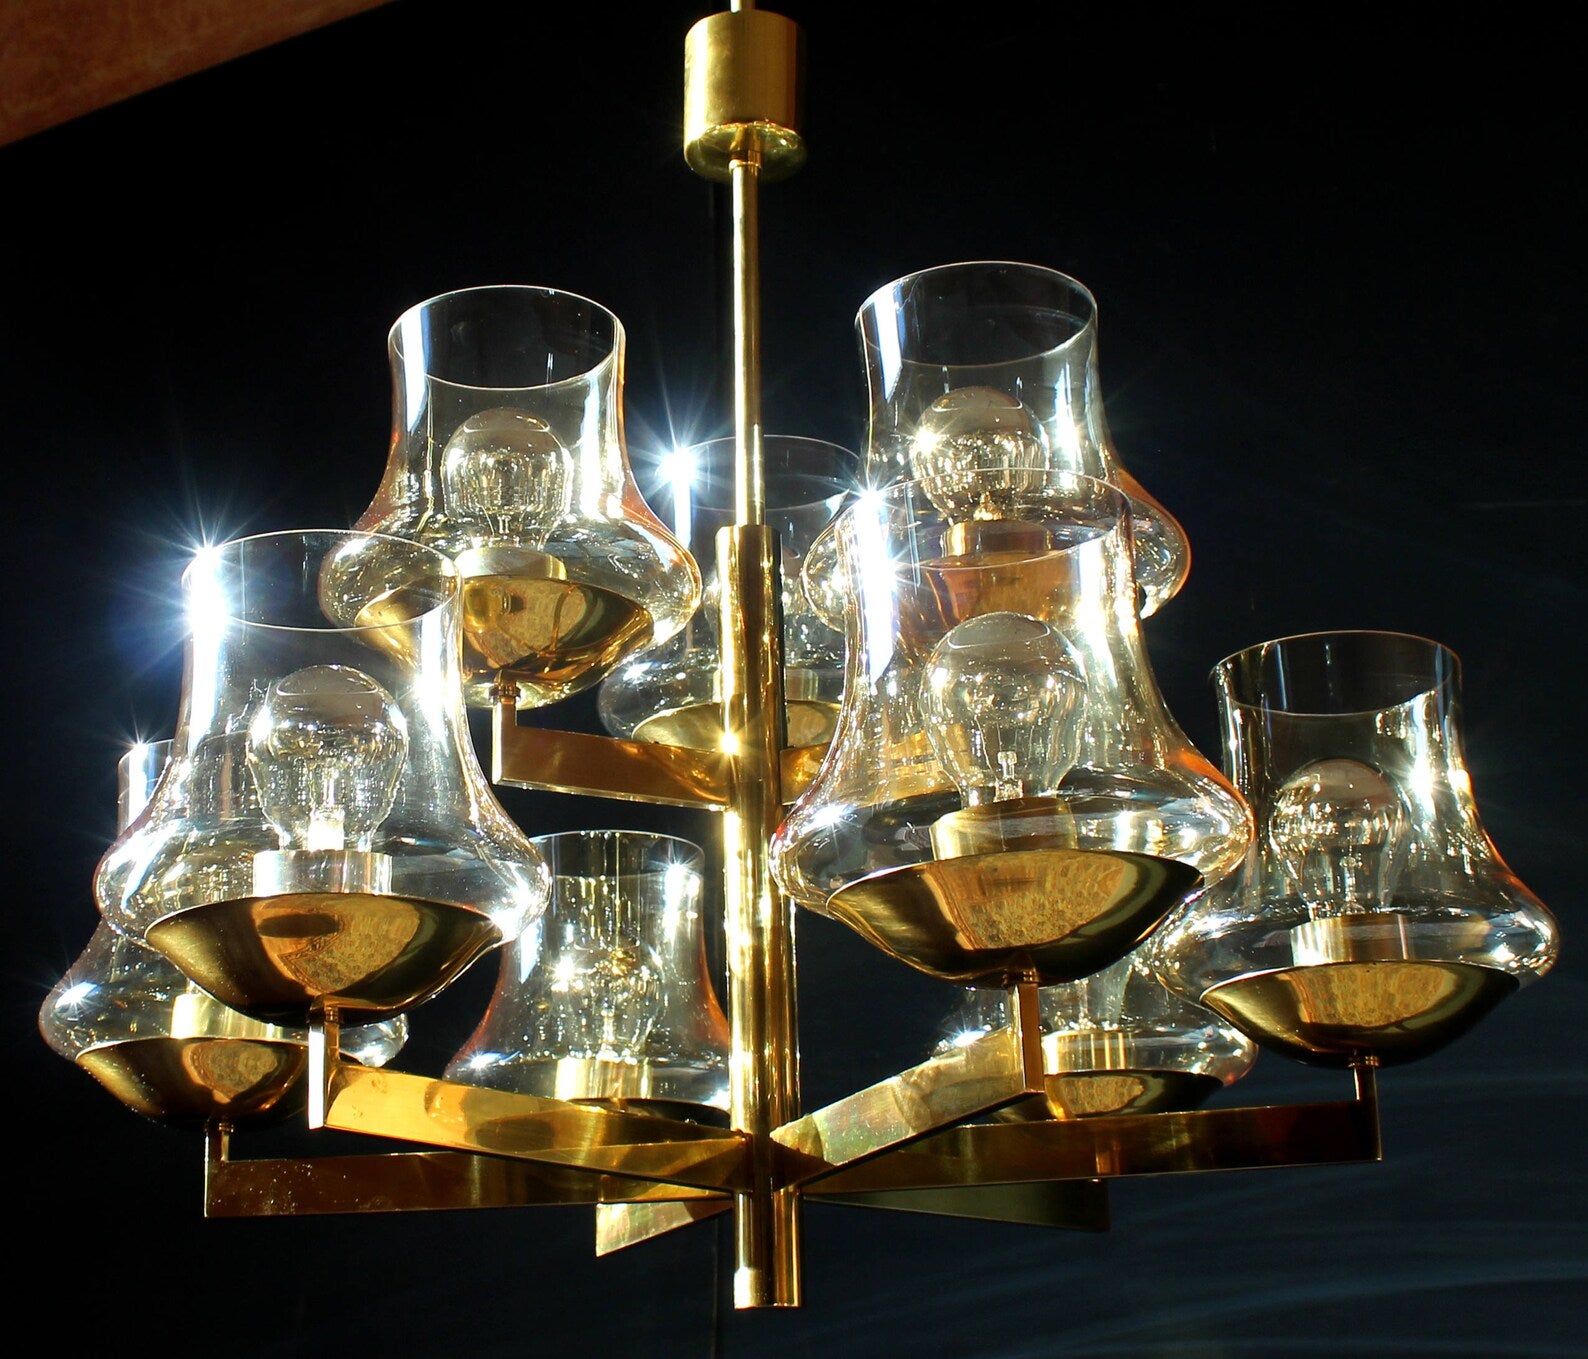 Eleganter modernistischer Kronleuchter 1970er Messing mit 9 + 1 Glaskugeln in Goldnuancen von Kaiser

Maße: Durchmesser 27